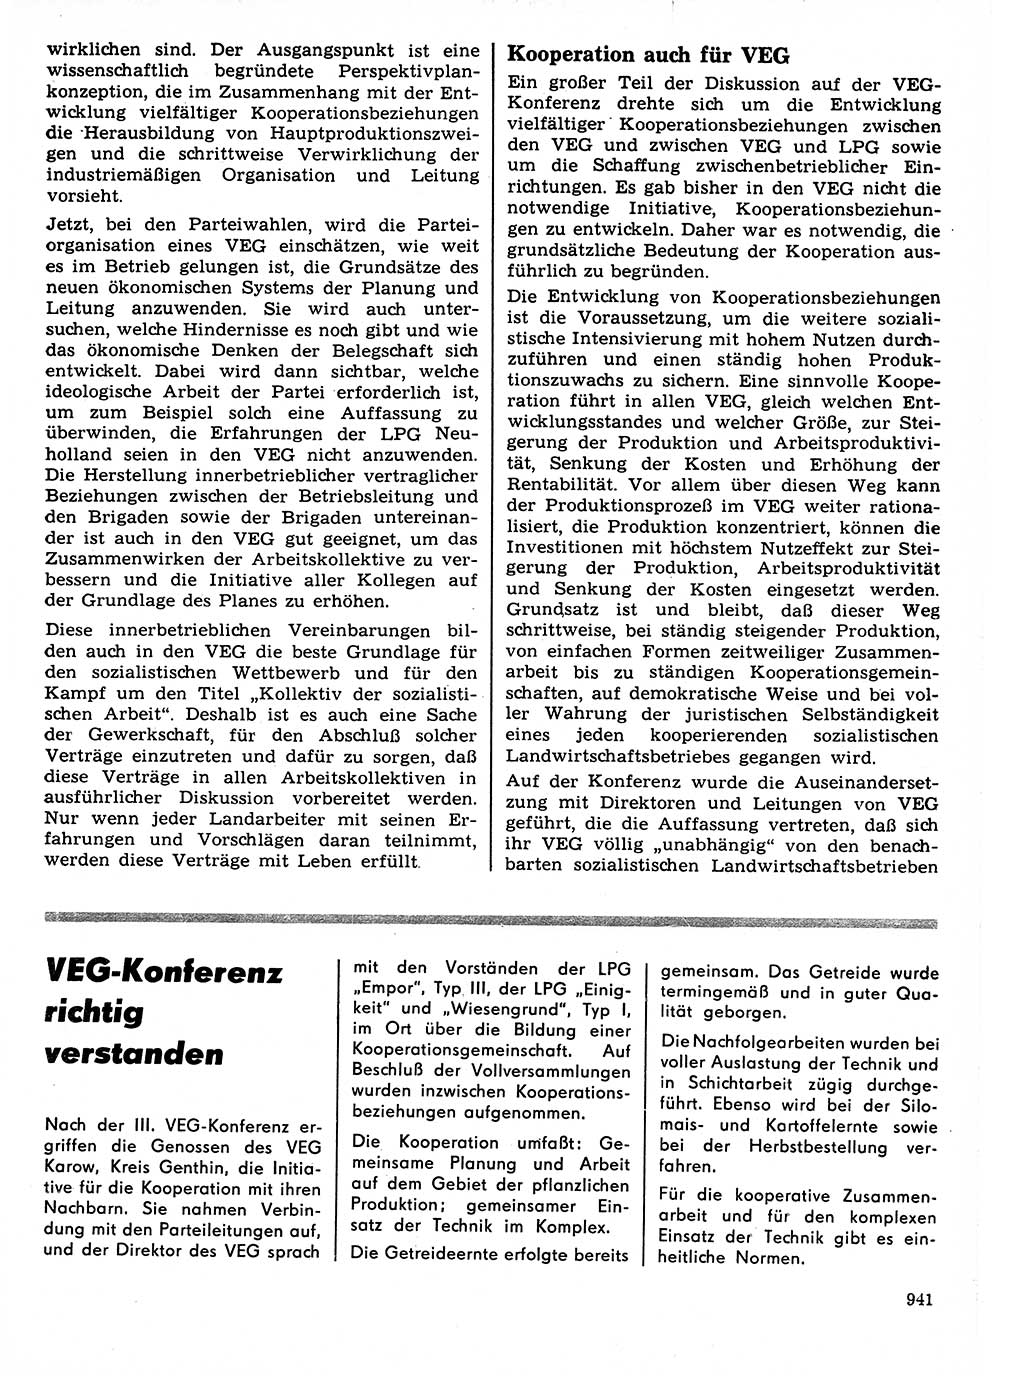 Neuer Weg (NW), Organ des Zentralkomitees (ZK) der SED (Sozialistische Einheitspartei Deutschlands) für Fragen des Parteilebens, 21. Jahrgang [Deutsche Demokratische Republik (DDR)] 1966, Seite 941 (NW ZK SED DDR 1966, S. 941)